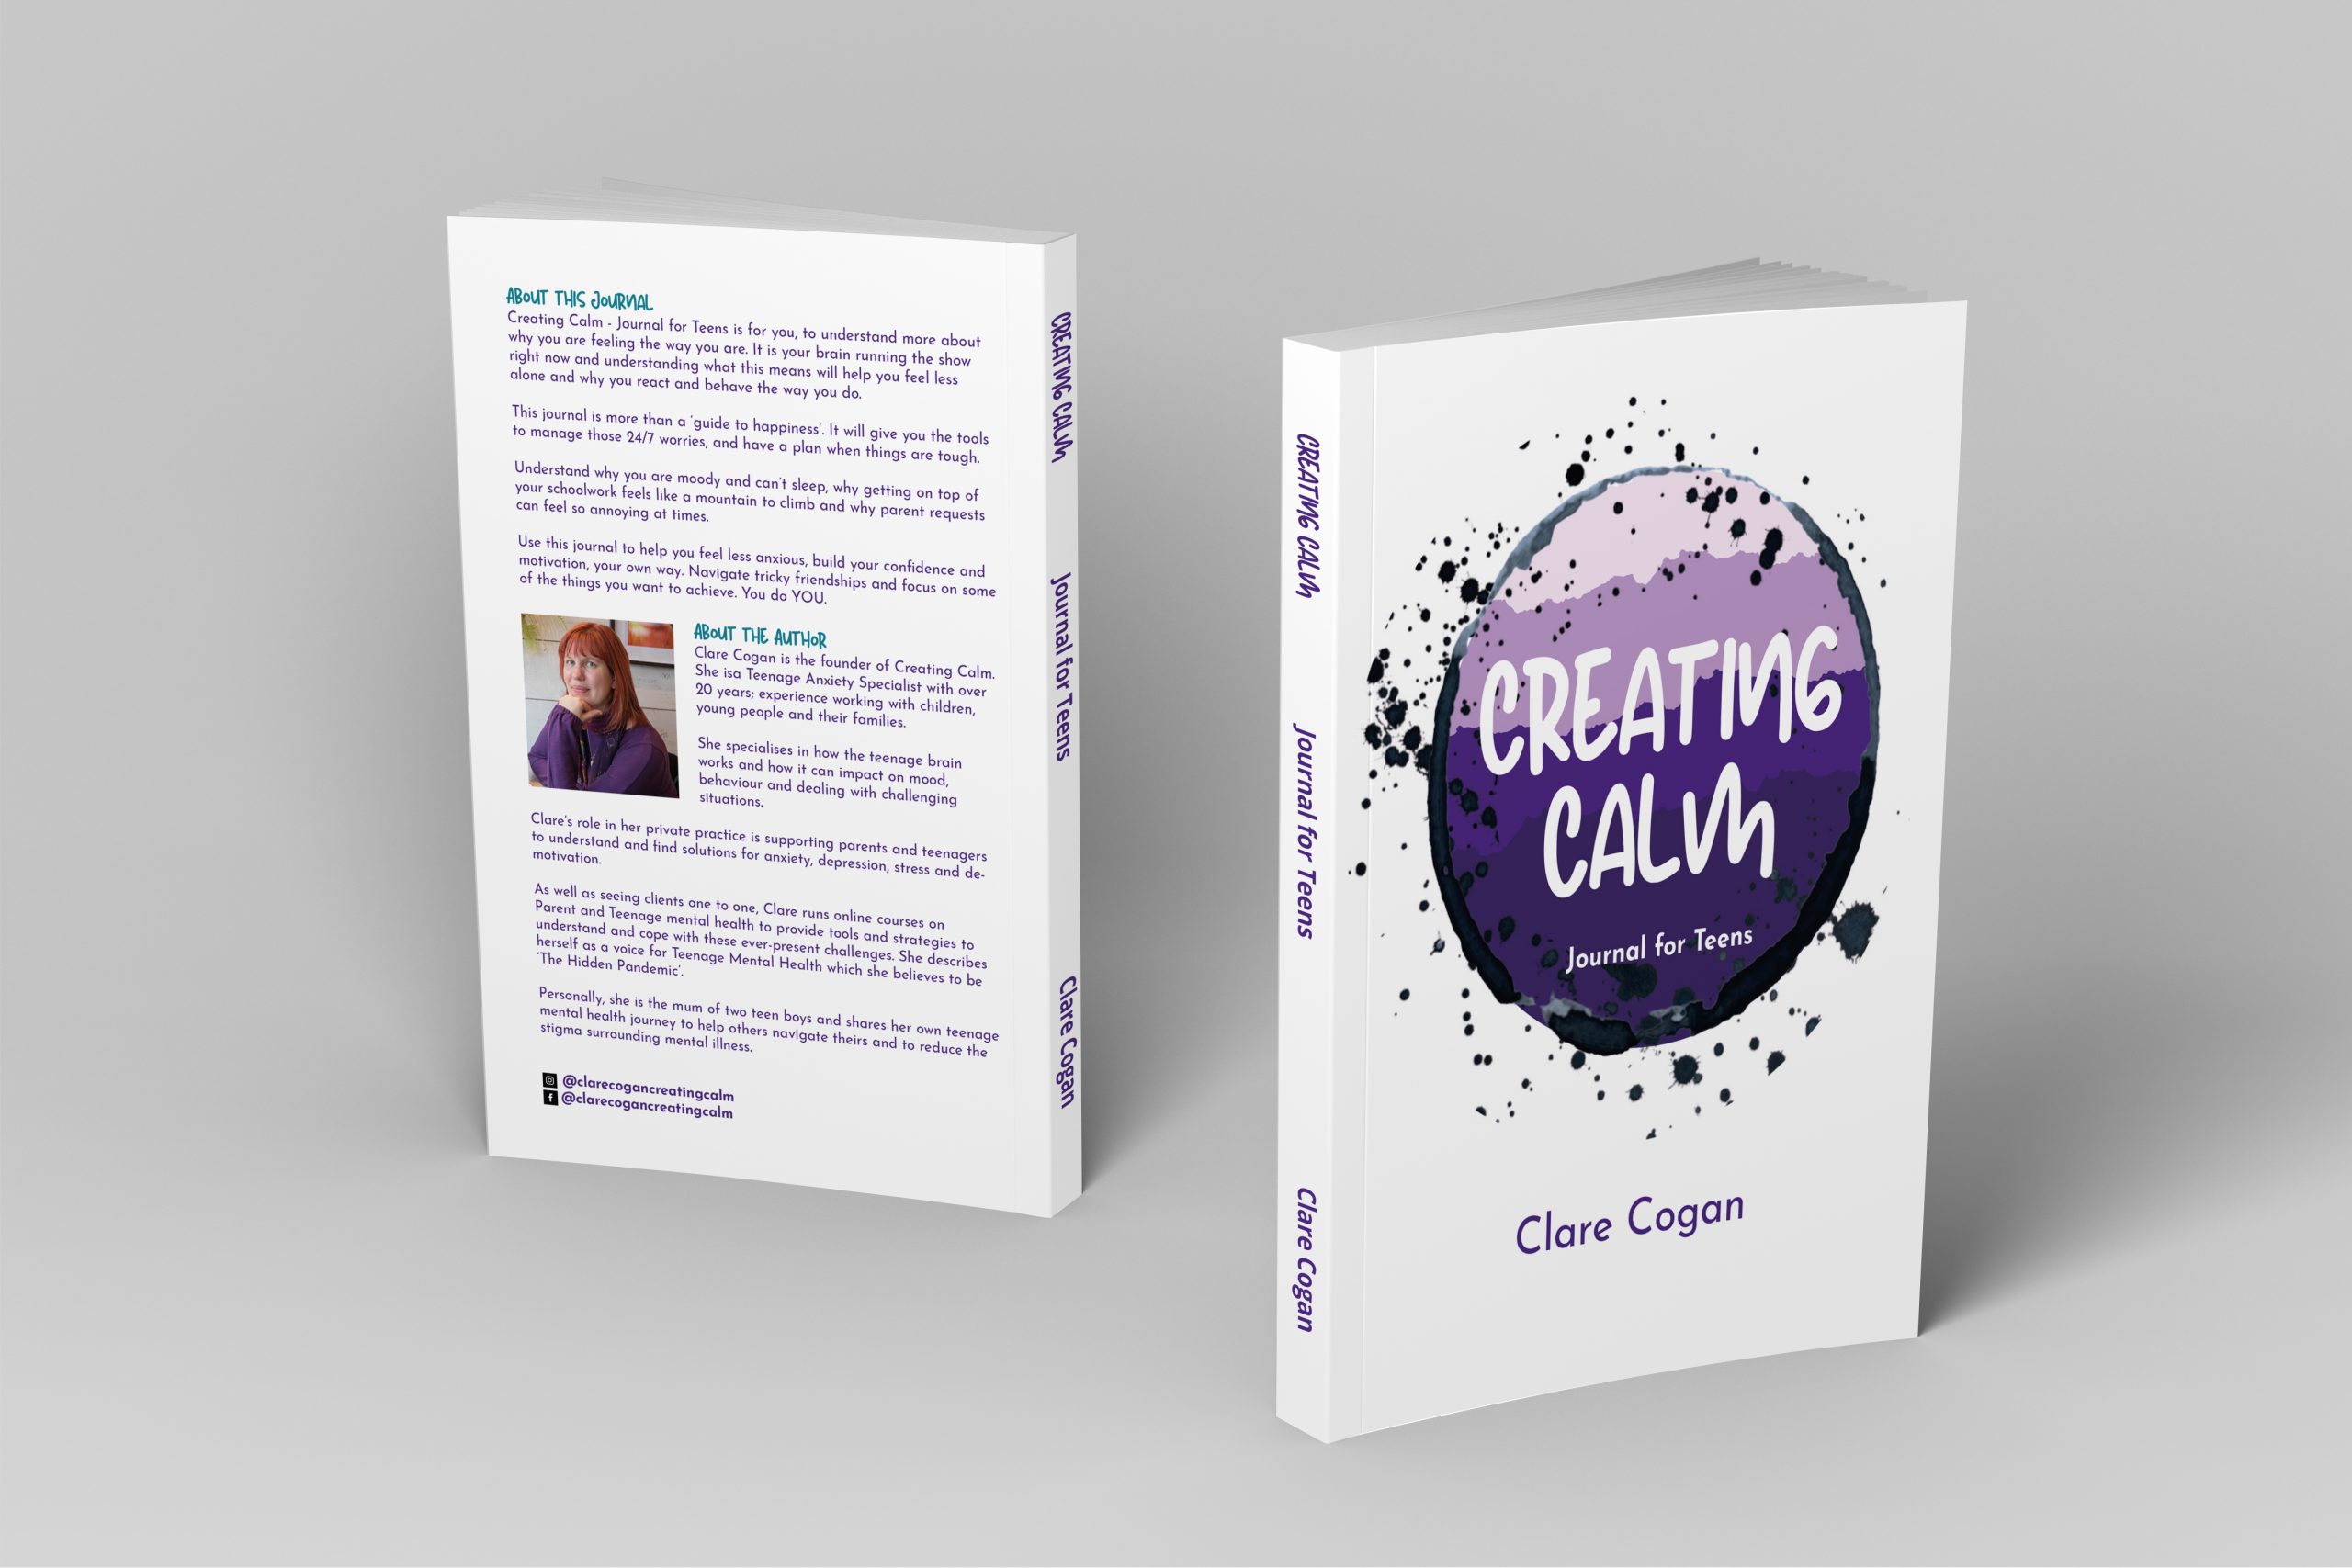 Clare Cogan Book Cover Design